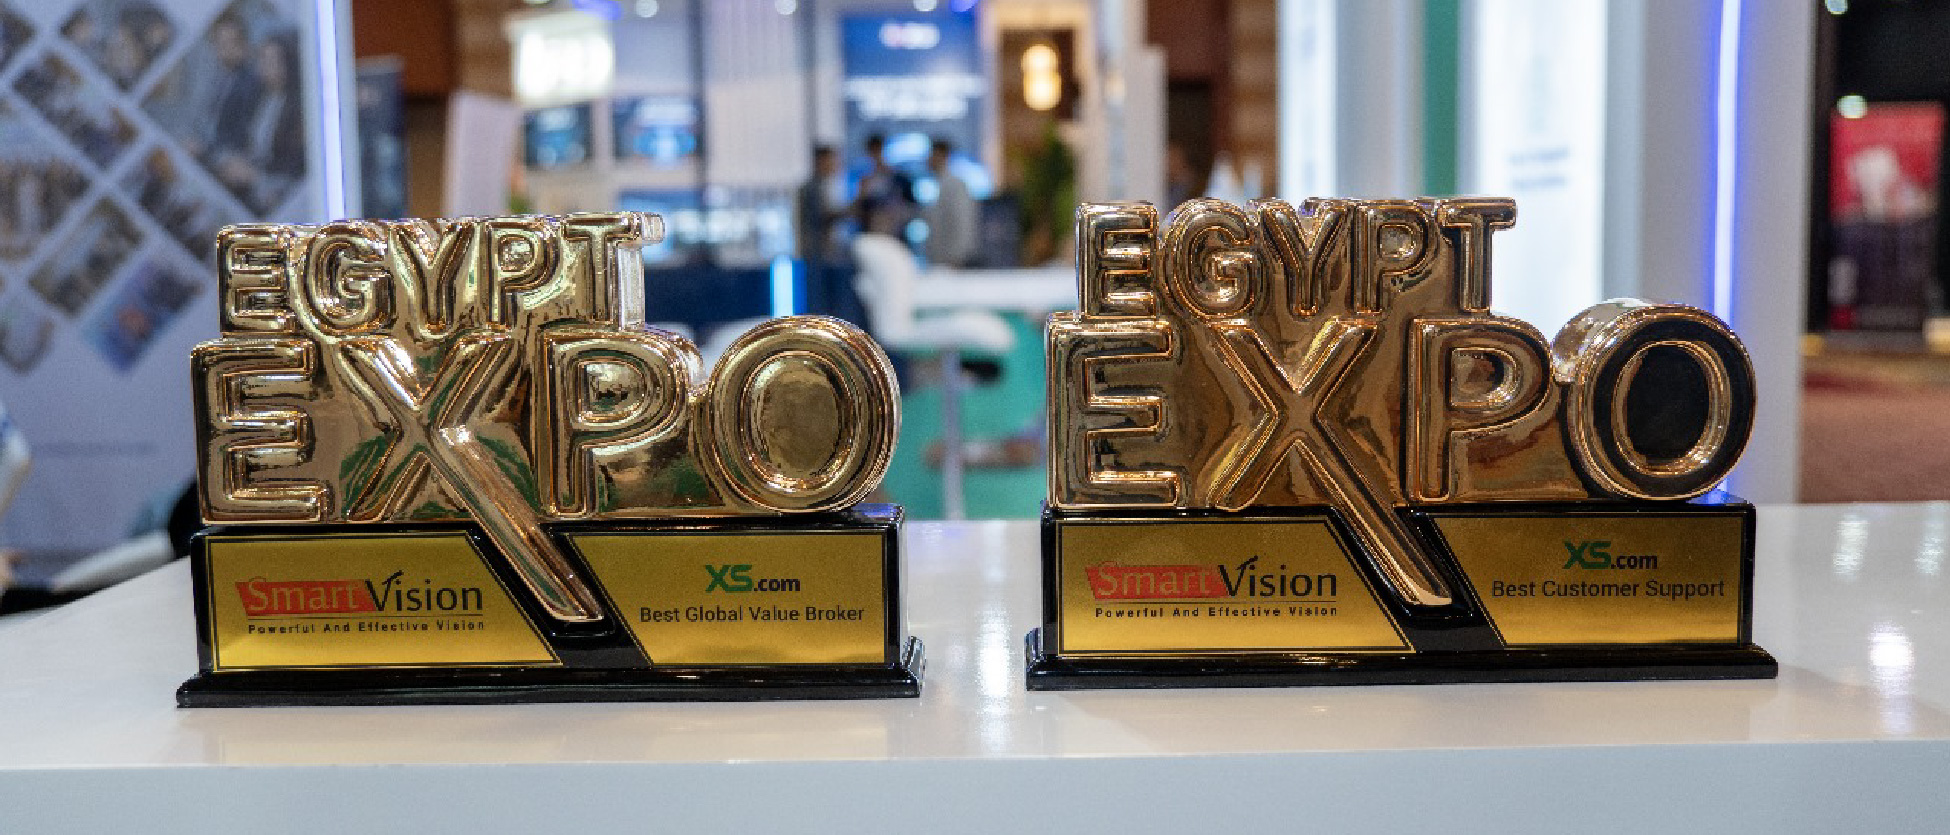 XS.com Recebe Prêmio de "Melhor Corretora de Valor Global" na Expo do Egito